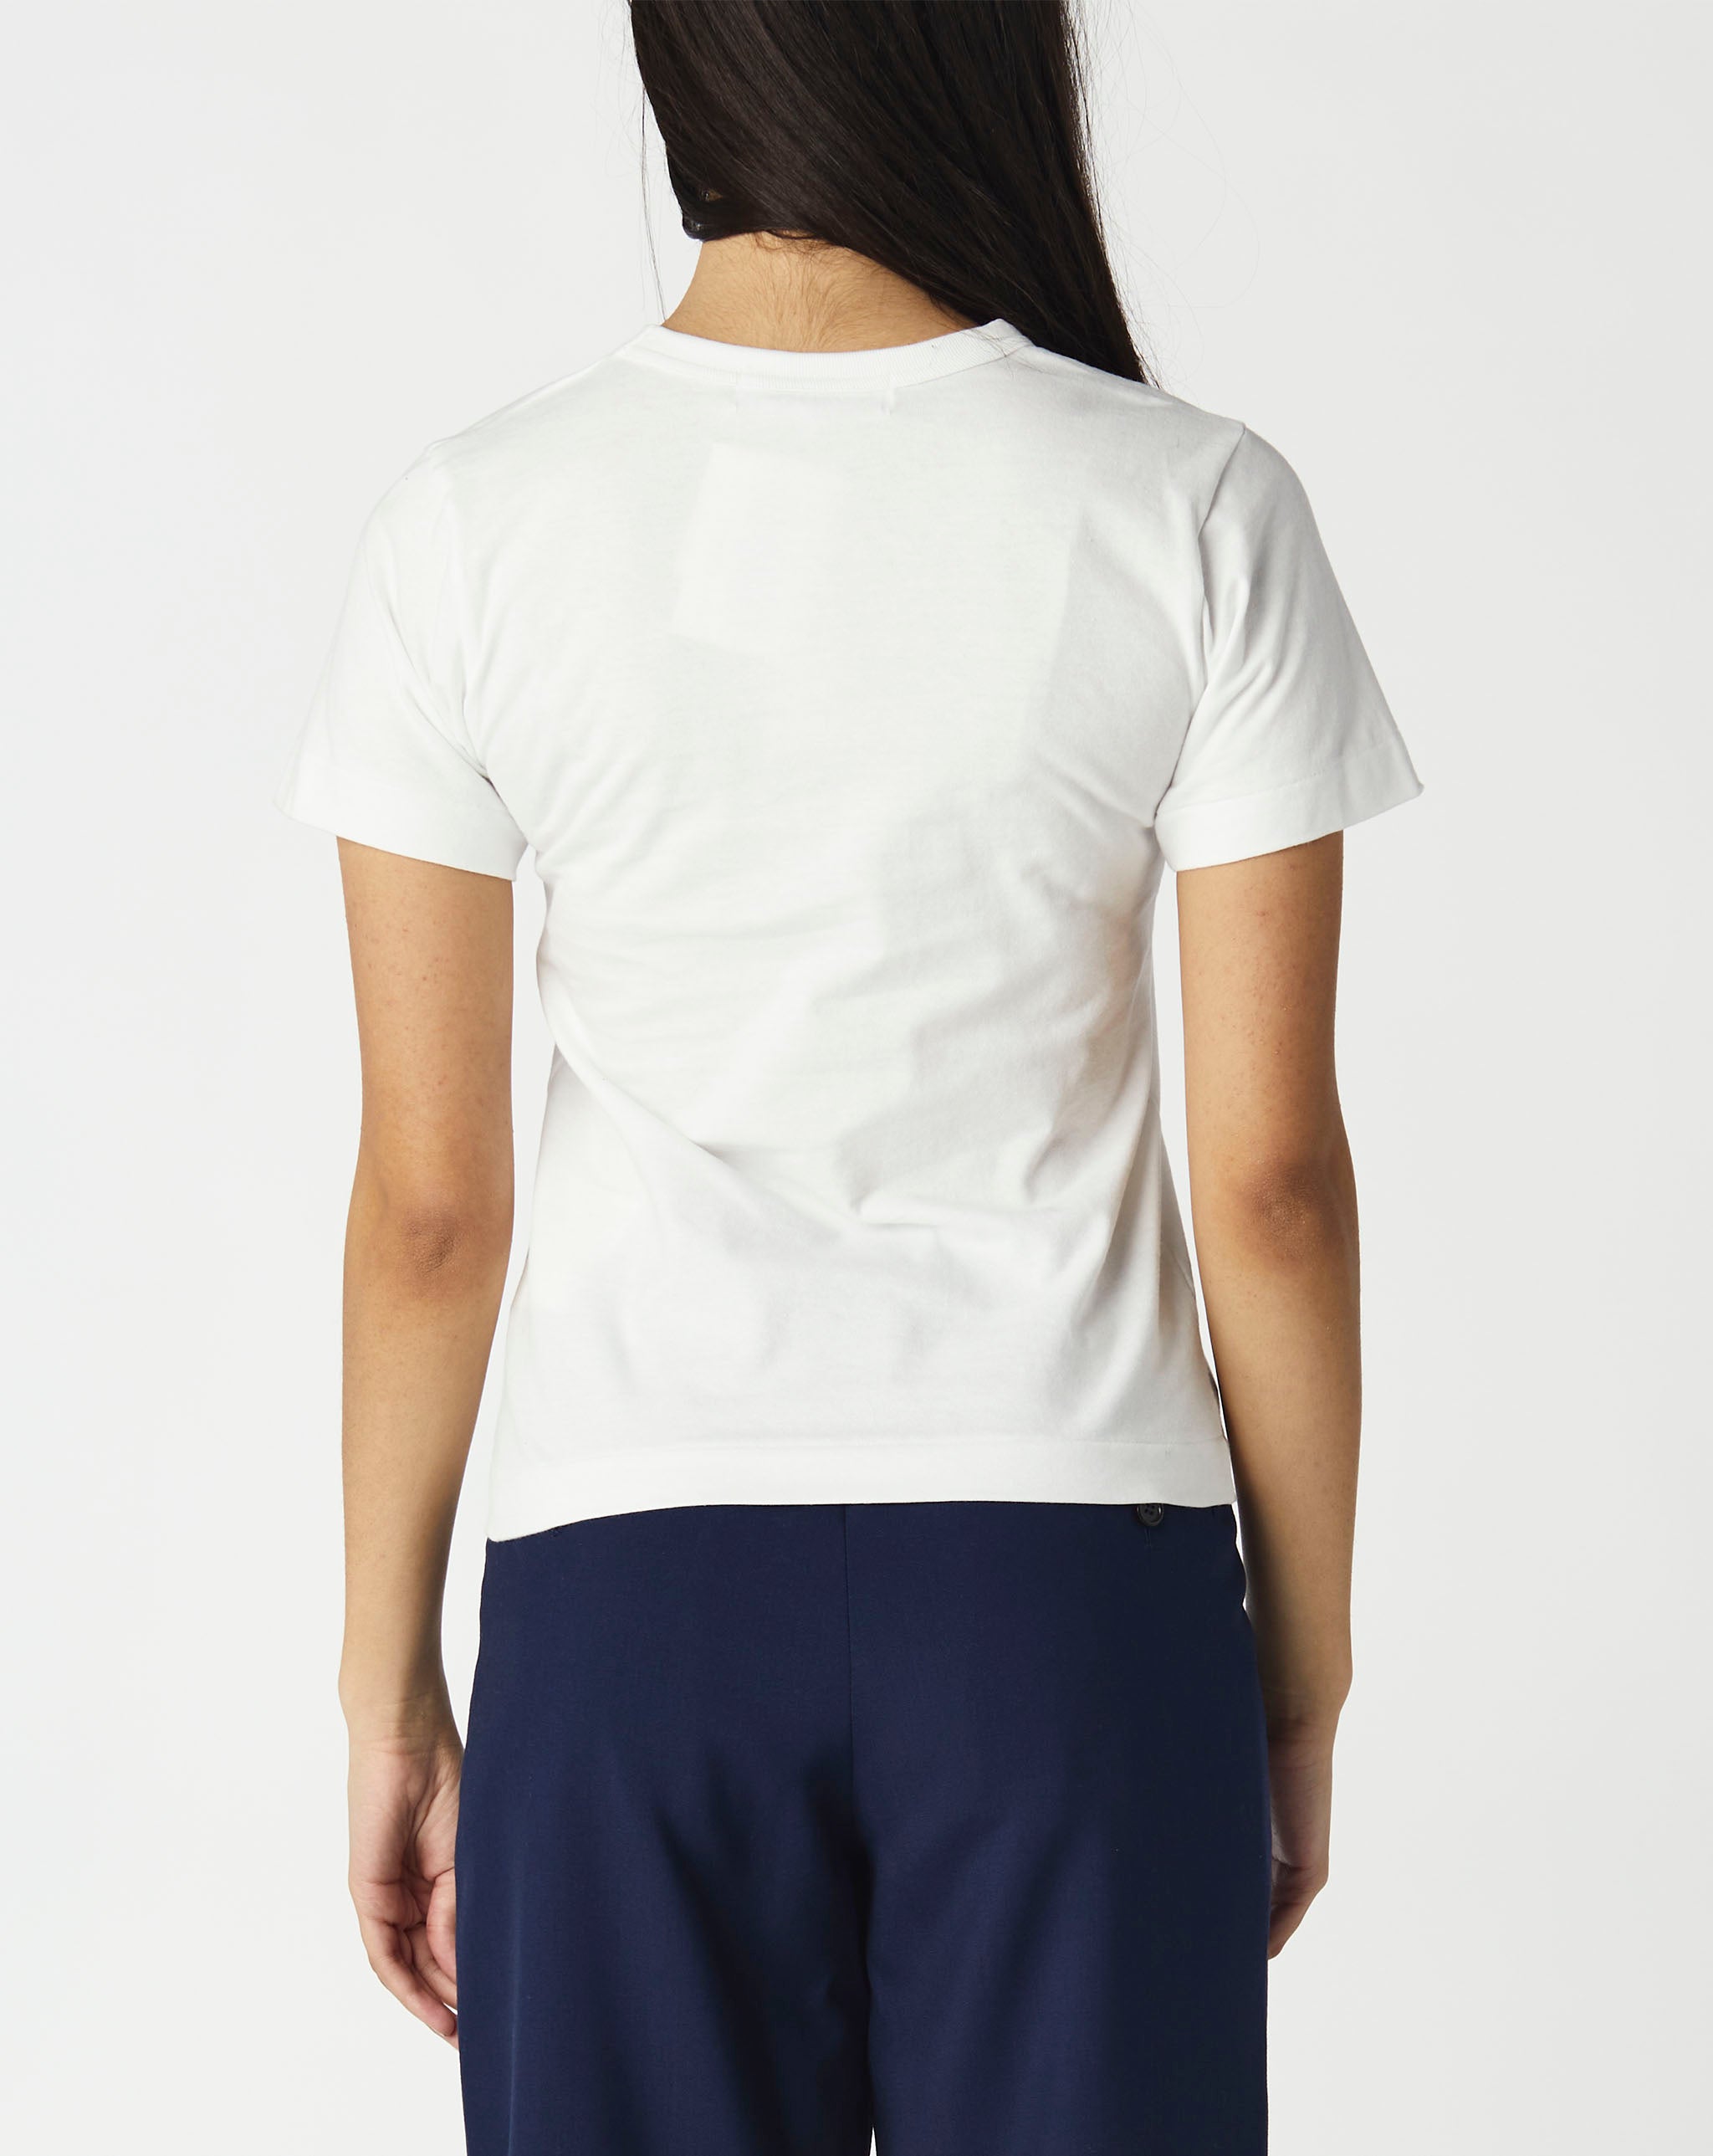 Black Mock Shirt Sehr Jumper Women's Play Polka Dot T-Shirt Sehr - Cheap Urlfreeze Jordan outlet